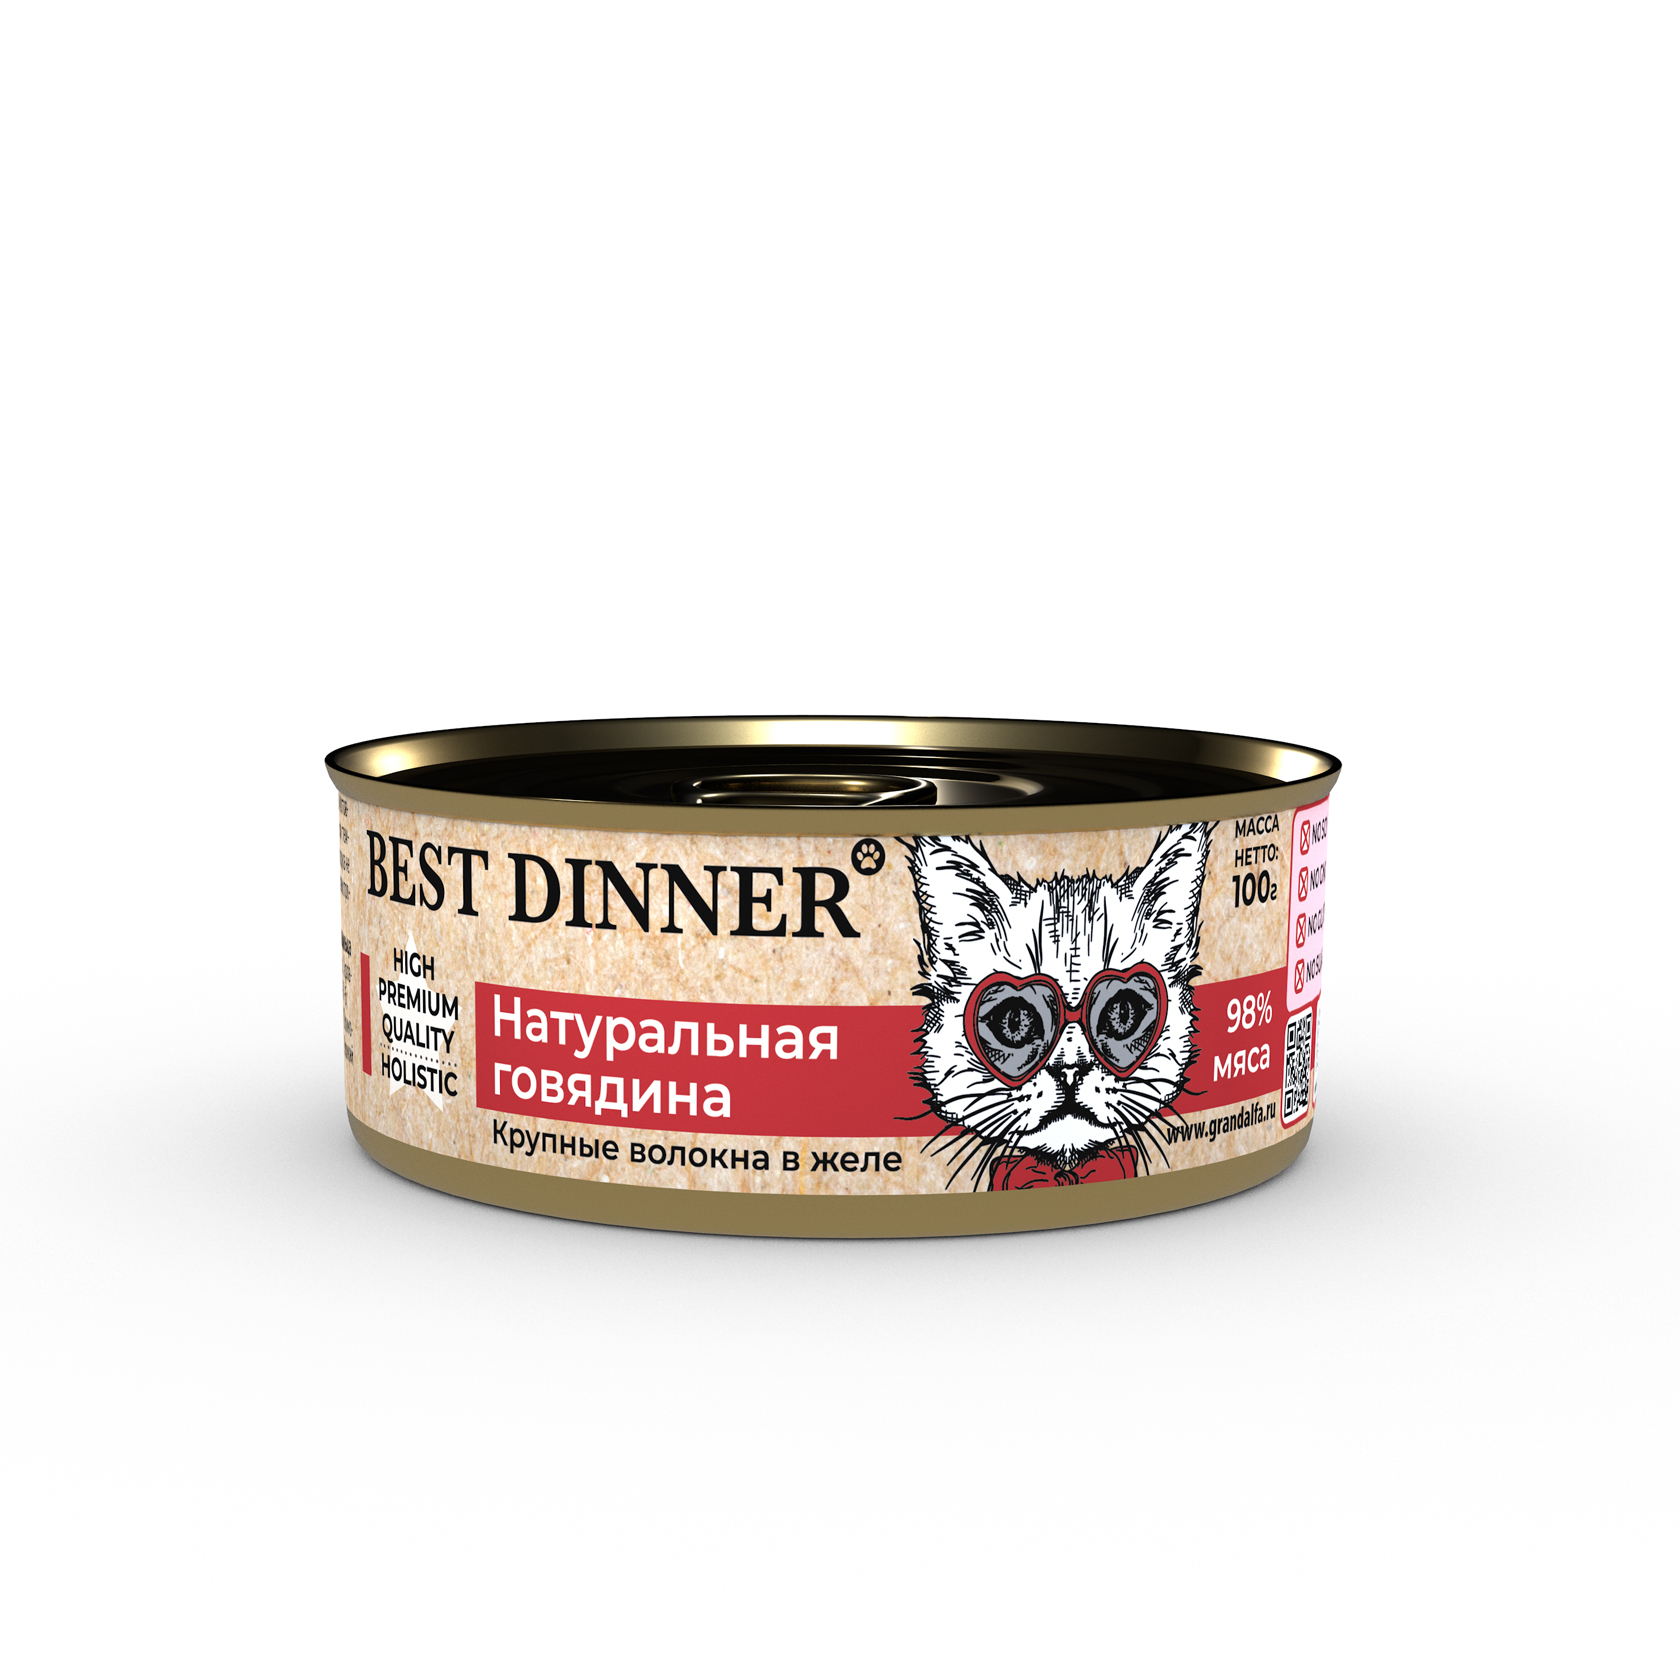 Best Dinner Higt Premium консервы для кошек и котят "Натуральная говядина" 100г фото, цены, купить